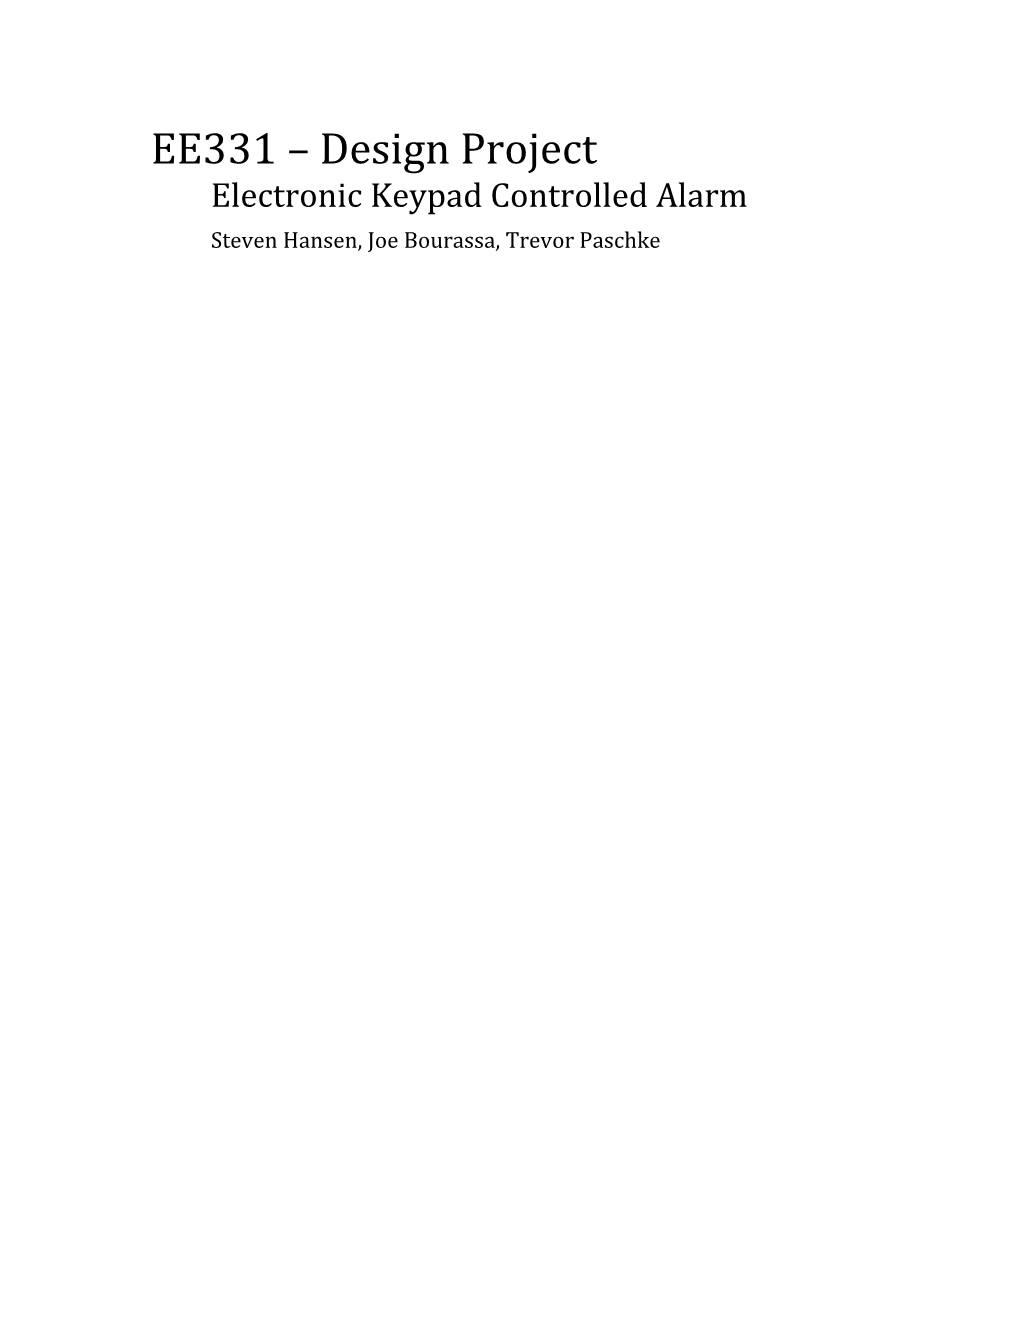 Electronic Keypad Controlled Alarm